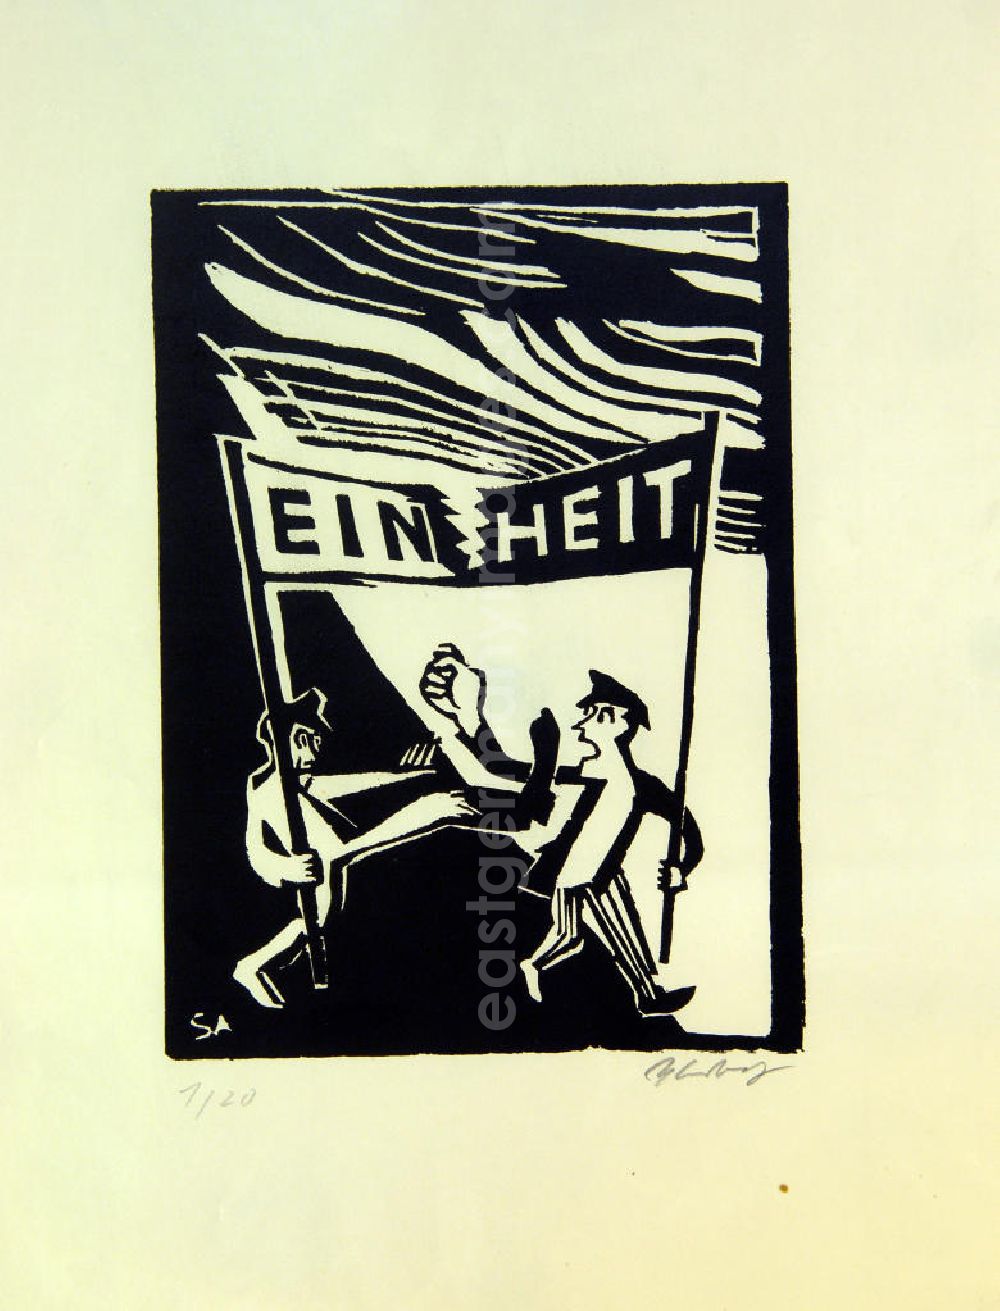 Berlin: Grafik von Herbert Sandberg Einheit aus dem Jahr 1948, 21,7x10,8cm Holzschnitt, handsigniert, 1/2